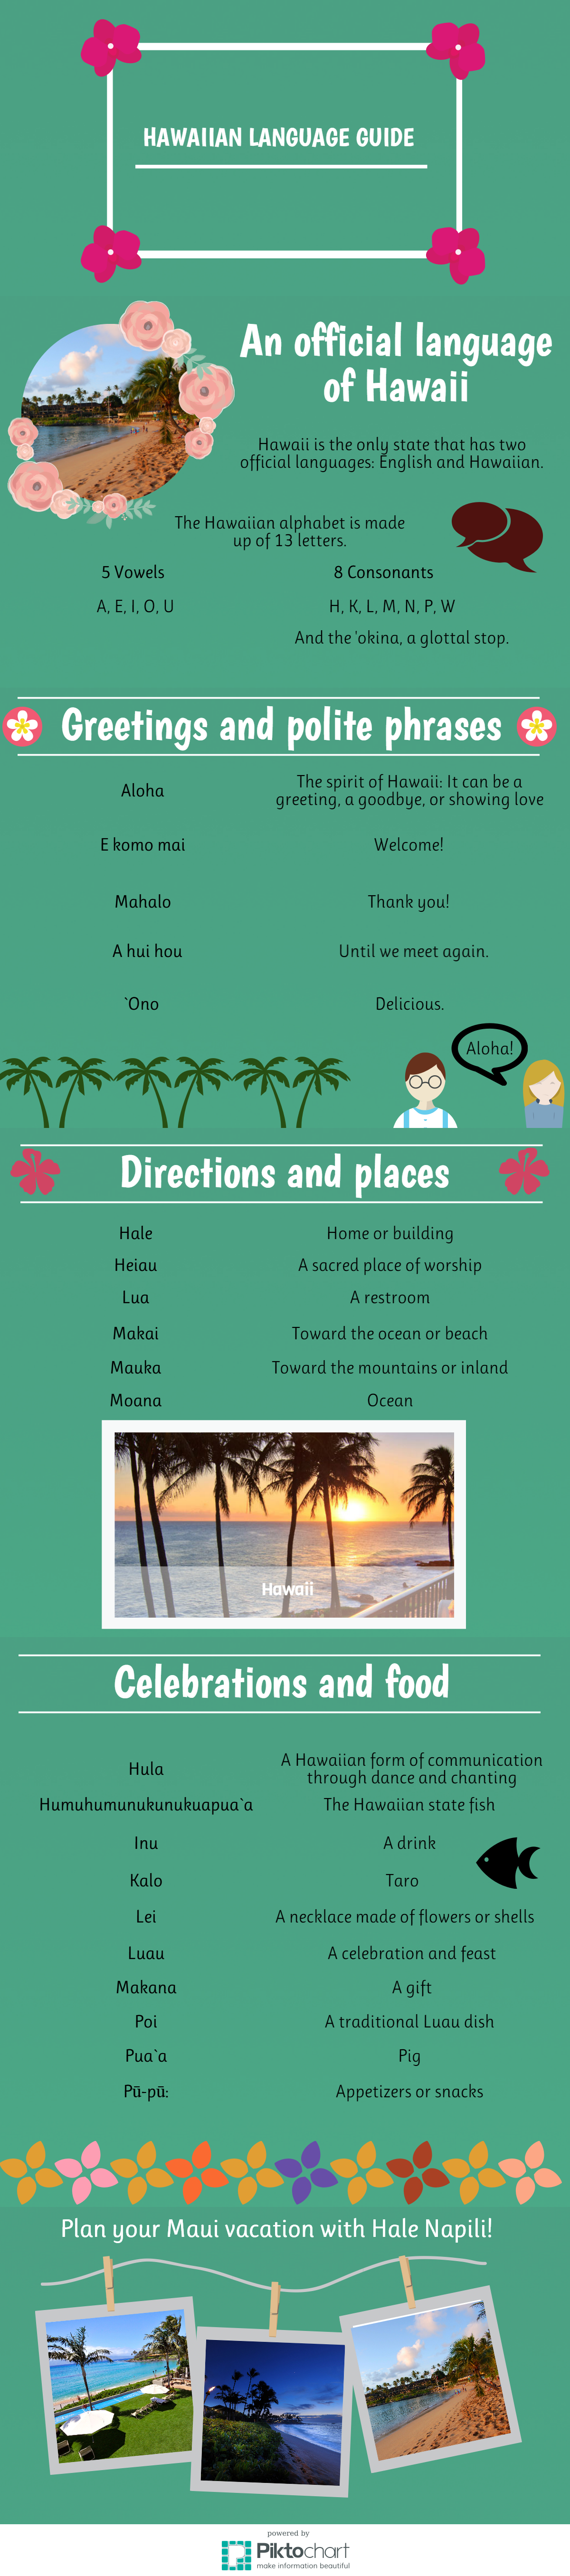 Hawaiian language guide infographic